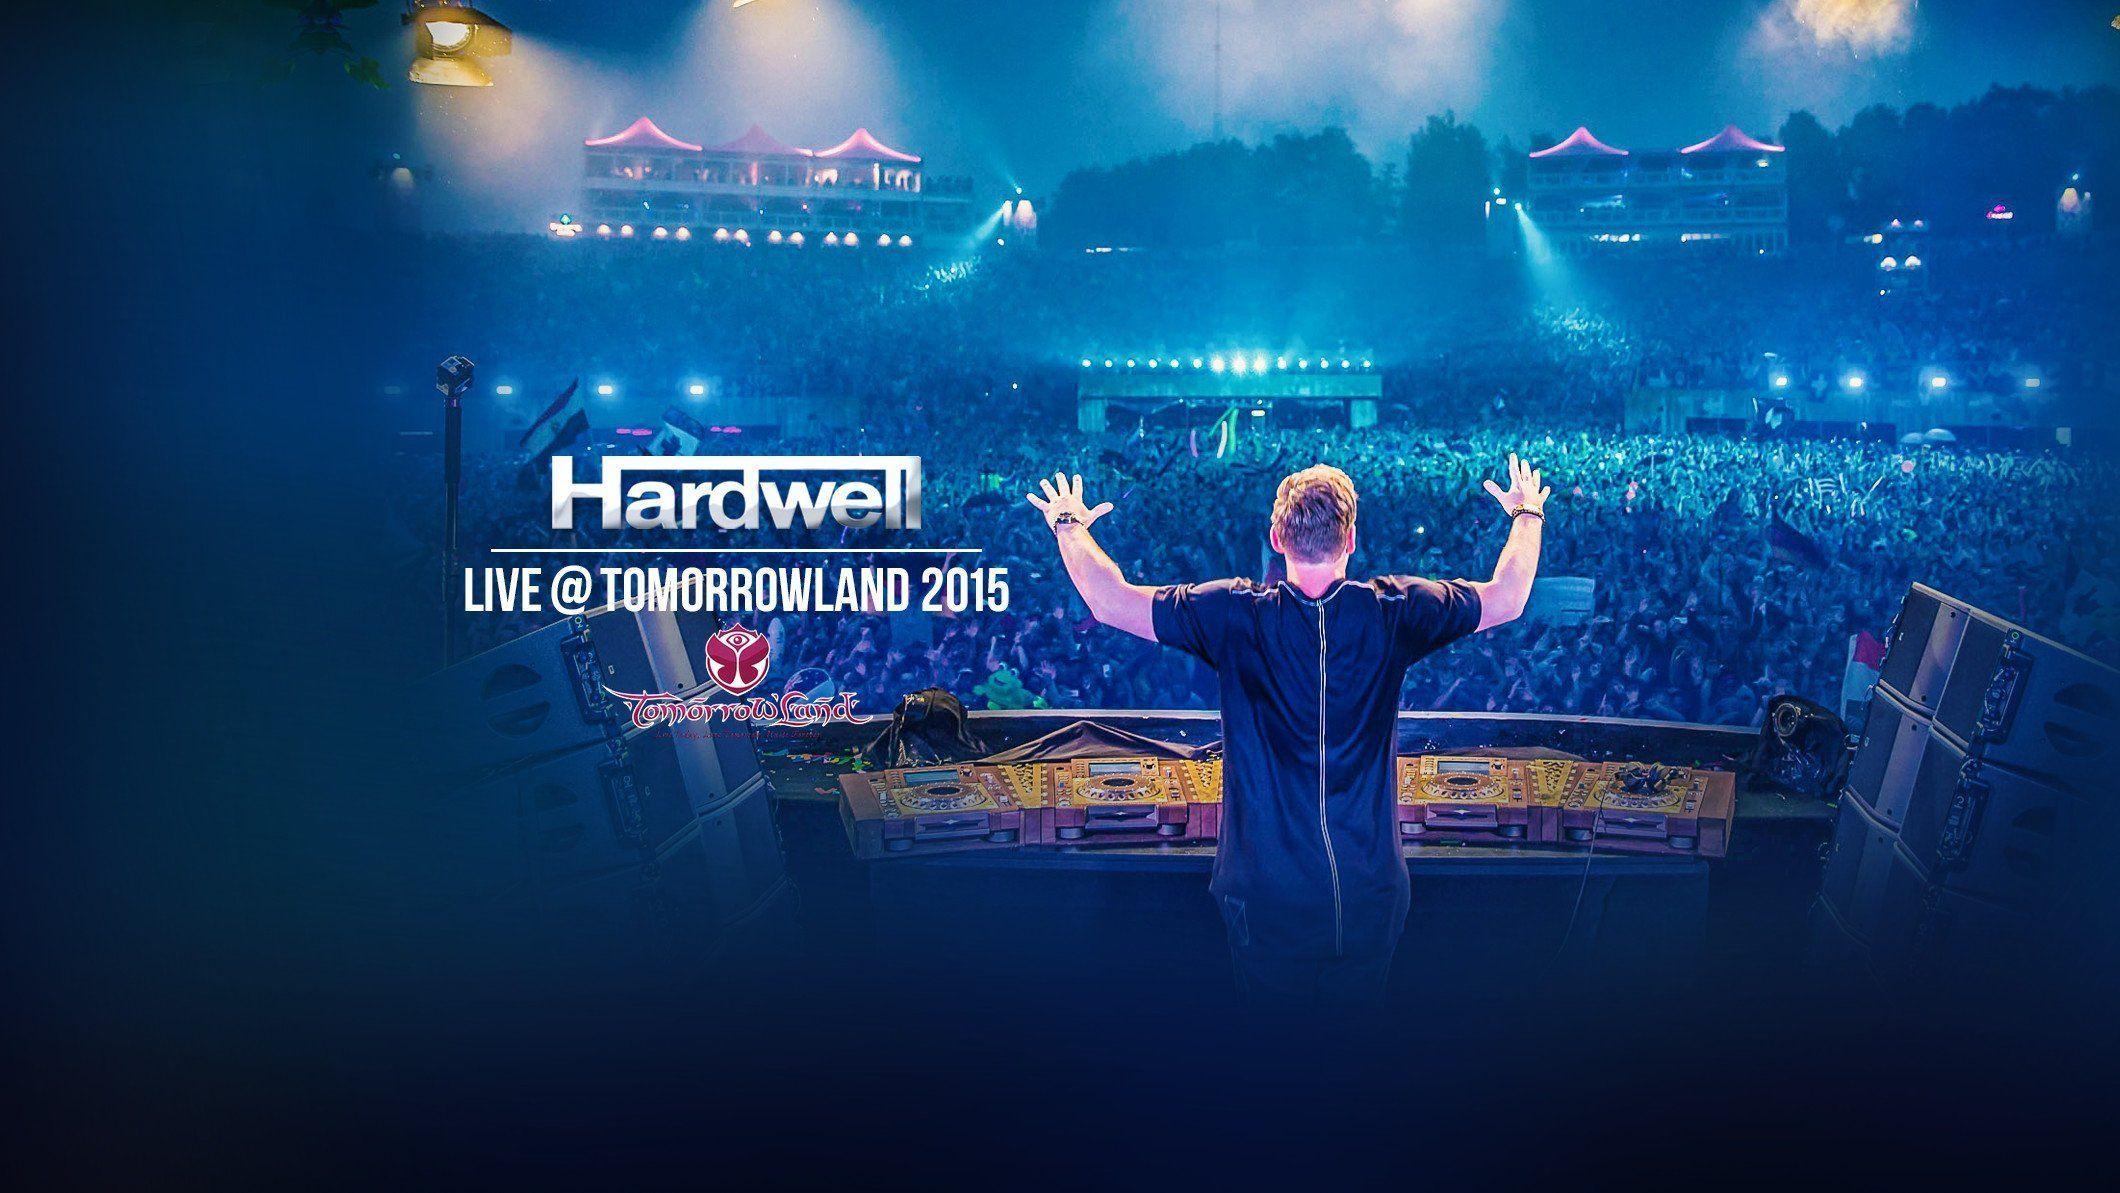 DJ Hardwell Tomorrowland 2015 wallpaperx1193